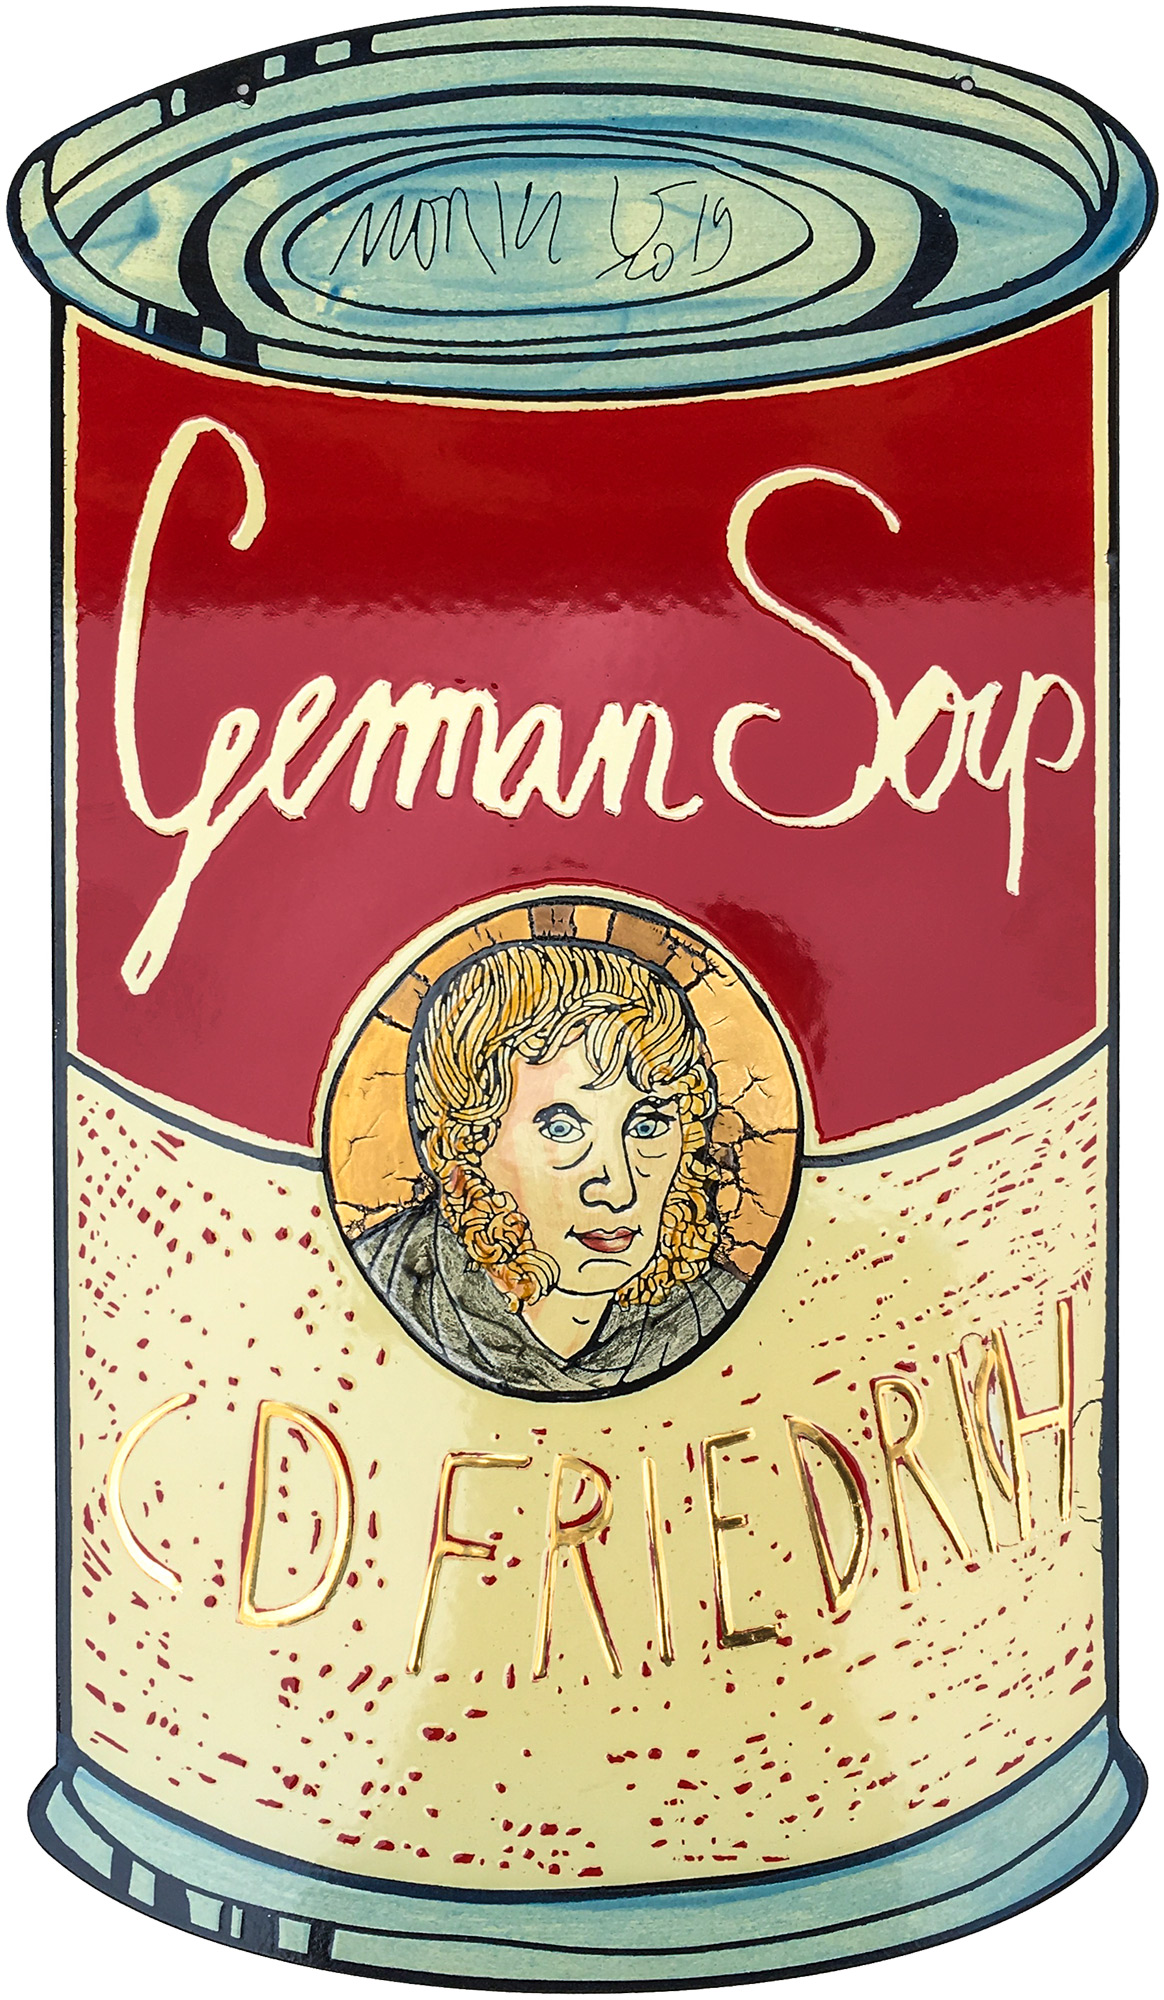 Wandobjekt "German Soup, C. D. Friedrich" (2019) (Unikat),  Emaille by Moritz Götze